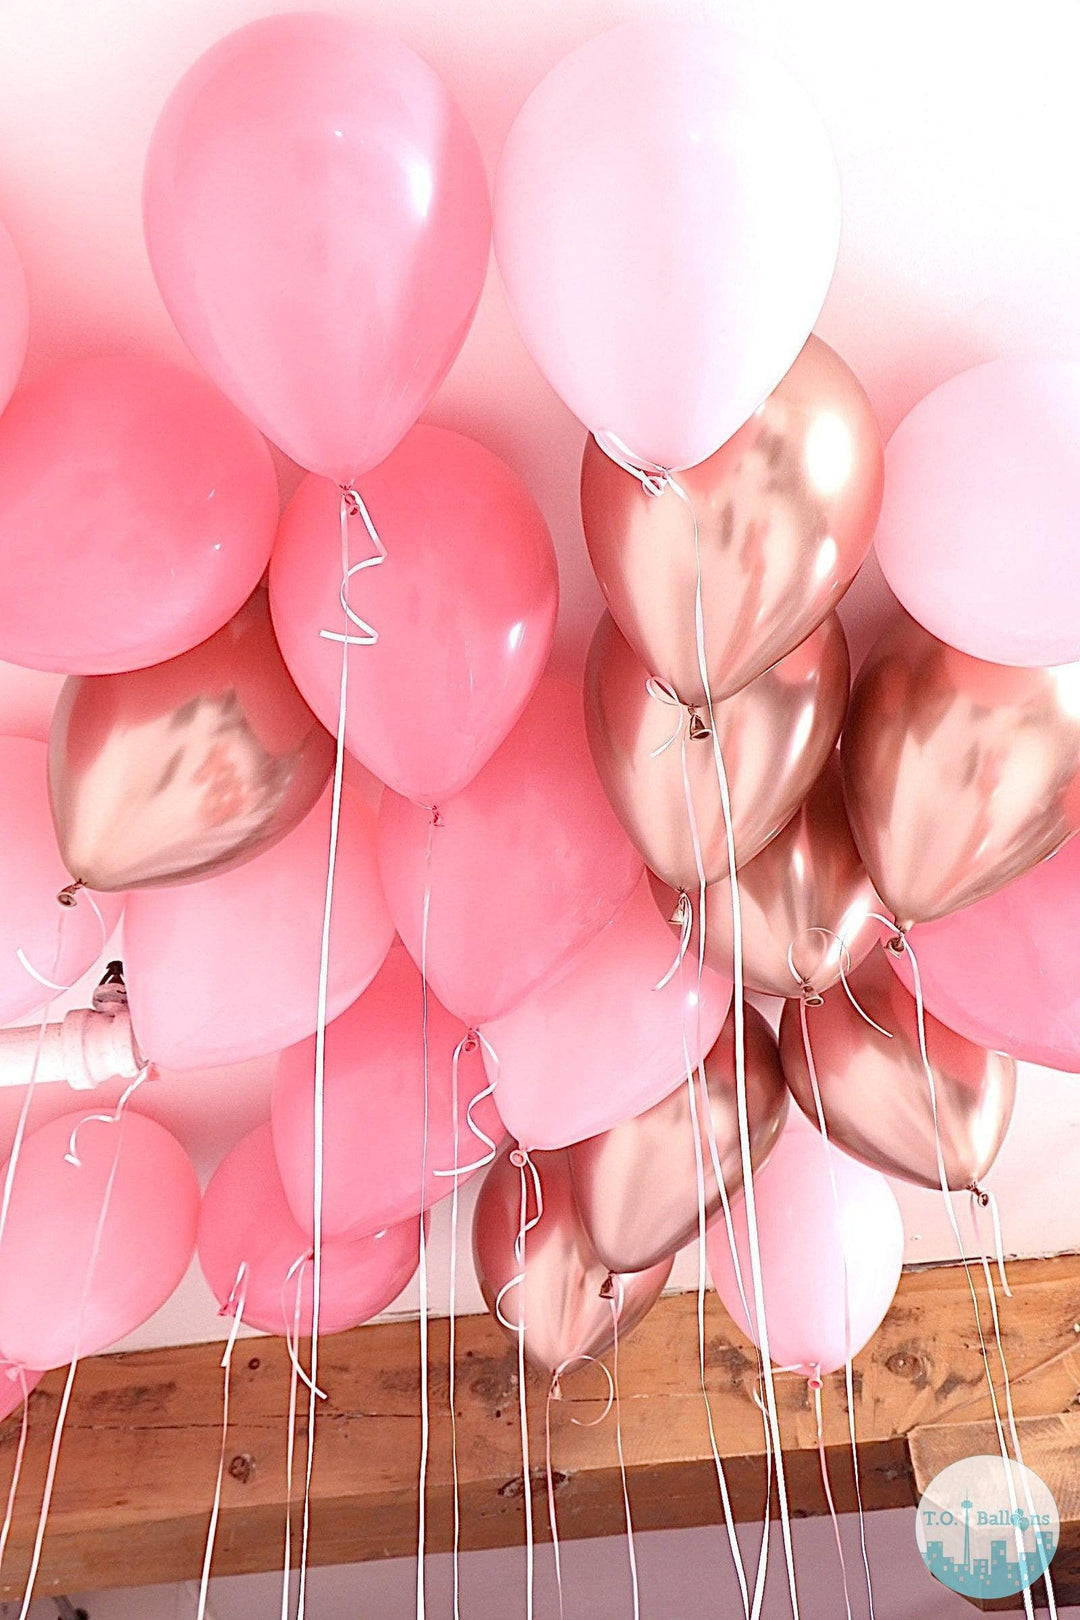 LOOSE BALLOONS - T.O. Balloons